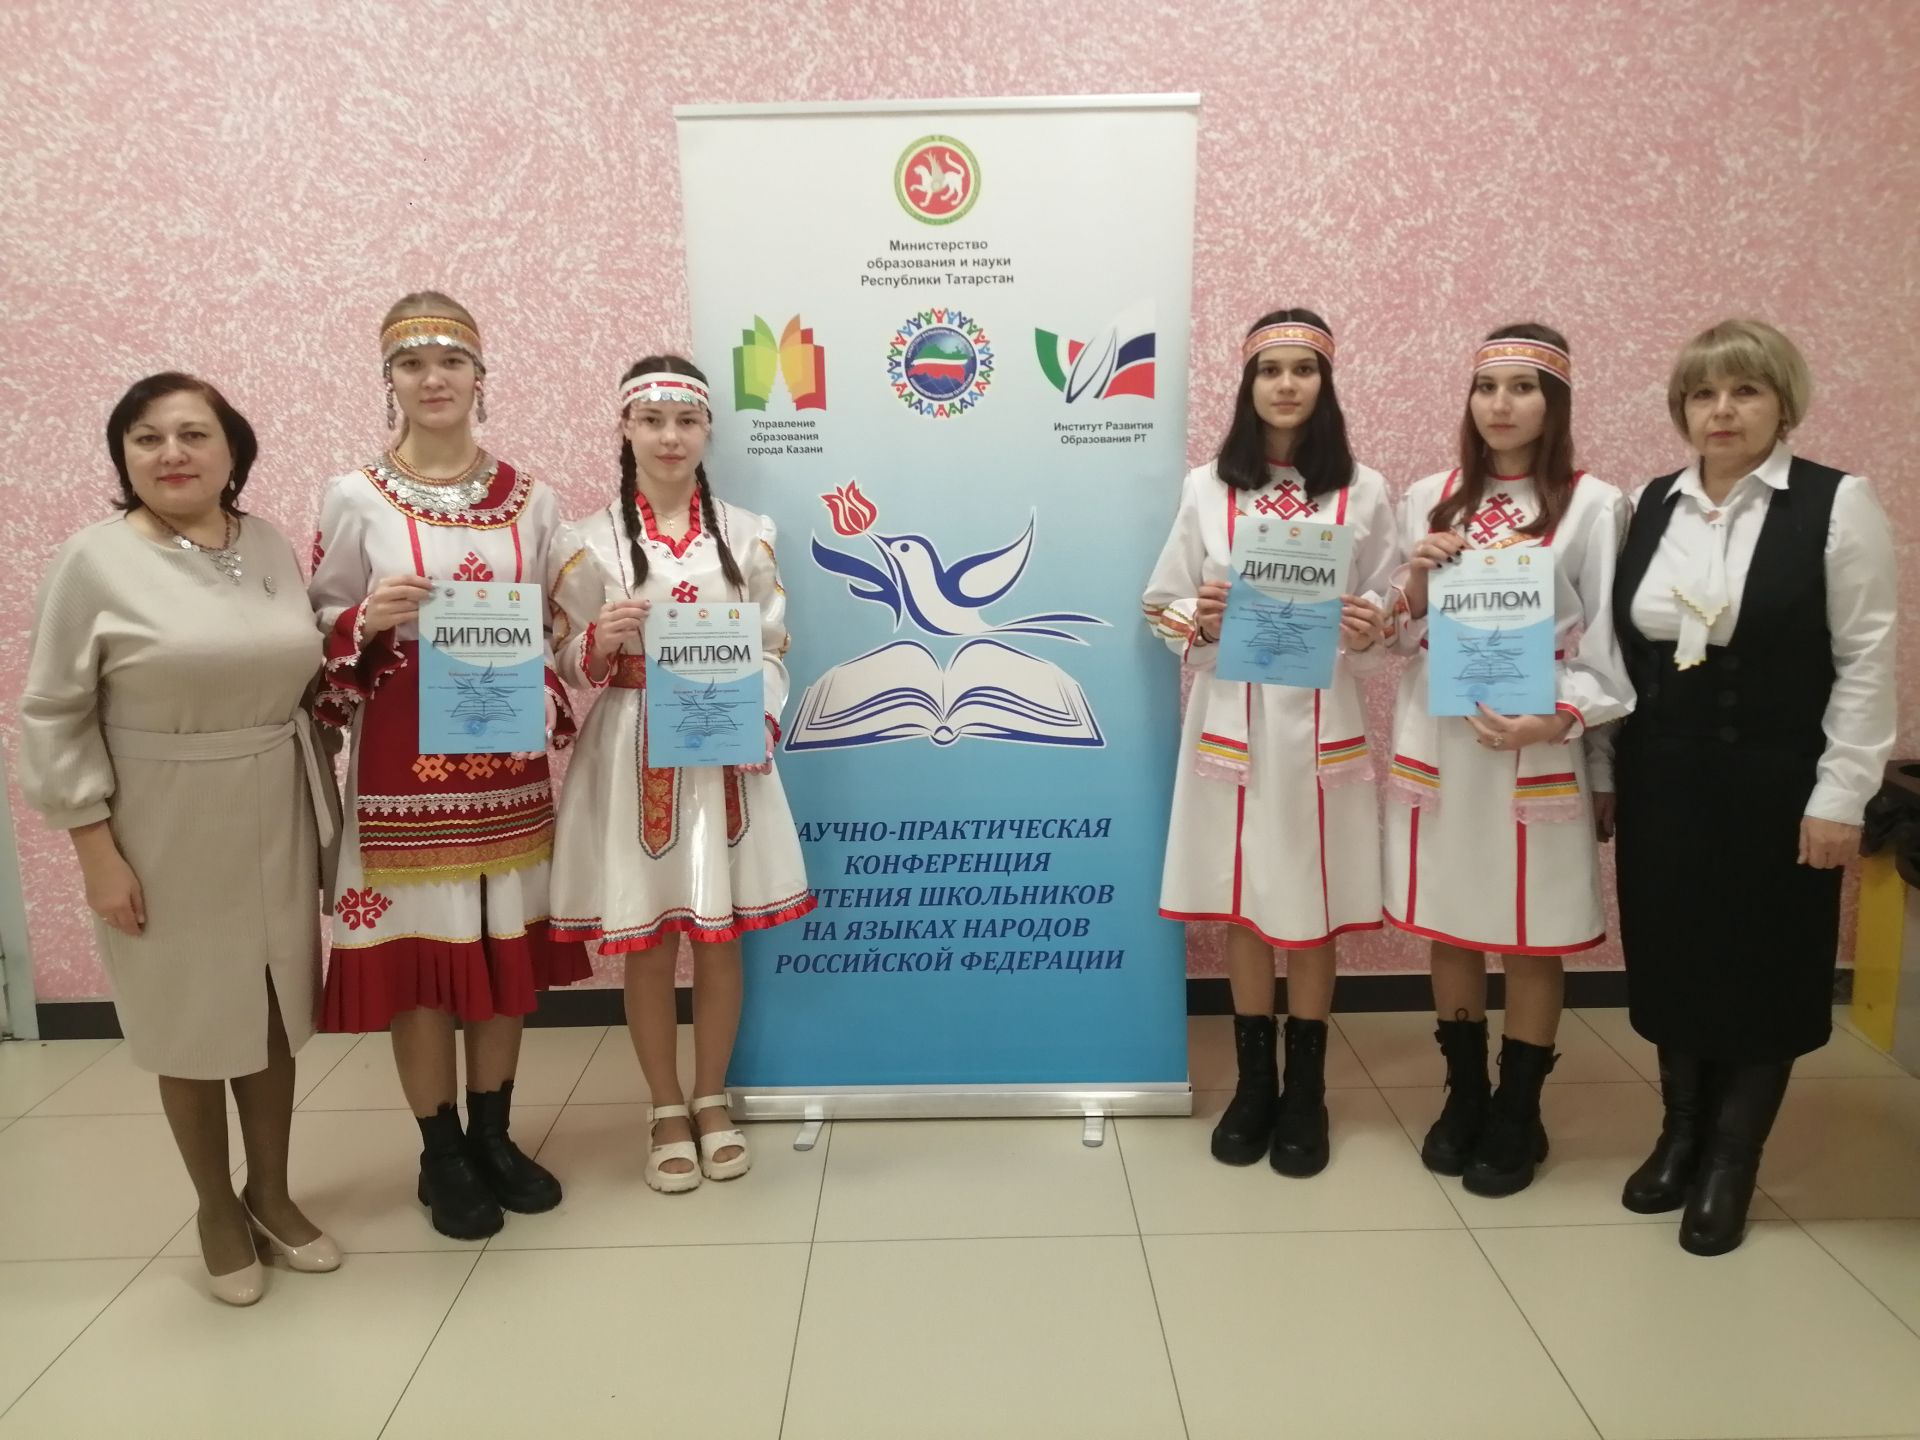 Дрожжановские учащиеся выступили на научно-практической конференции и чтении школьников на языках народов РФ